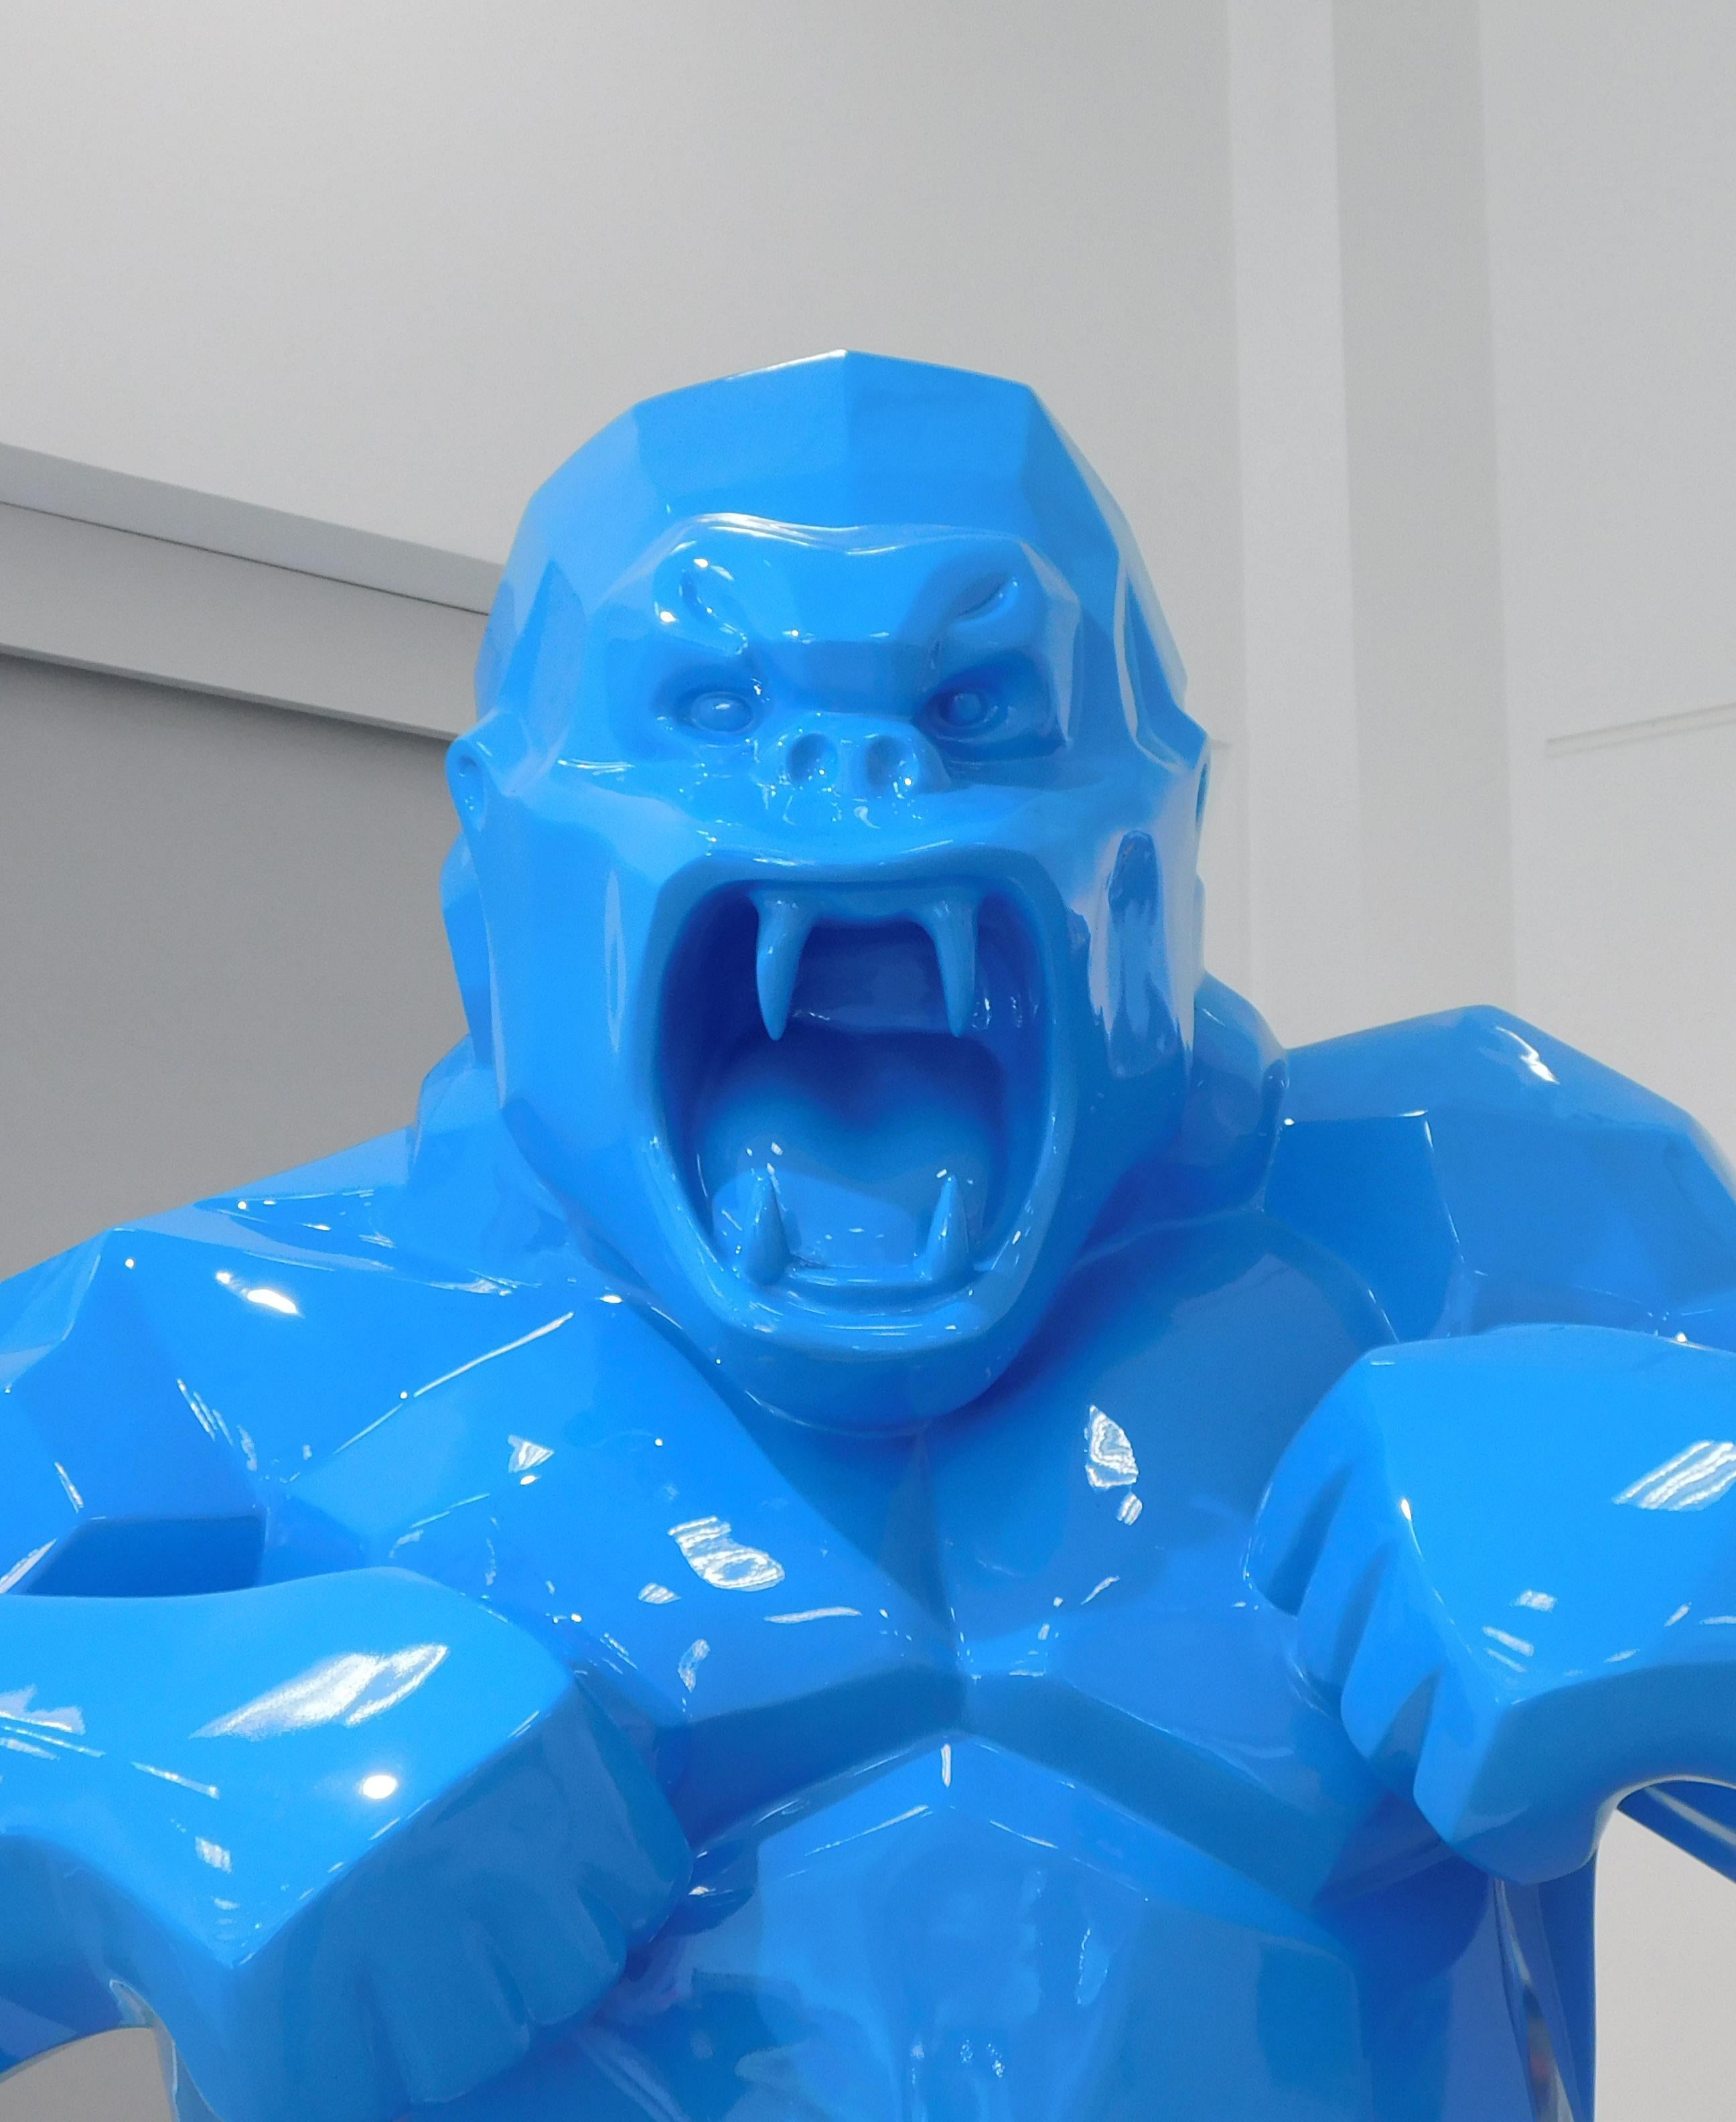 Wild Kong - Twitter Blue - Sculpture by Richard Orlinski